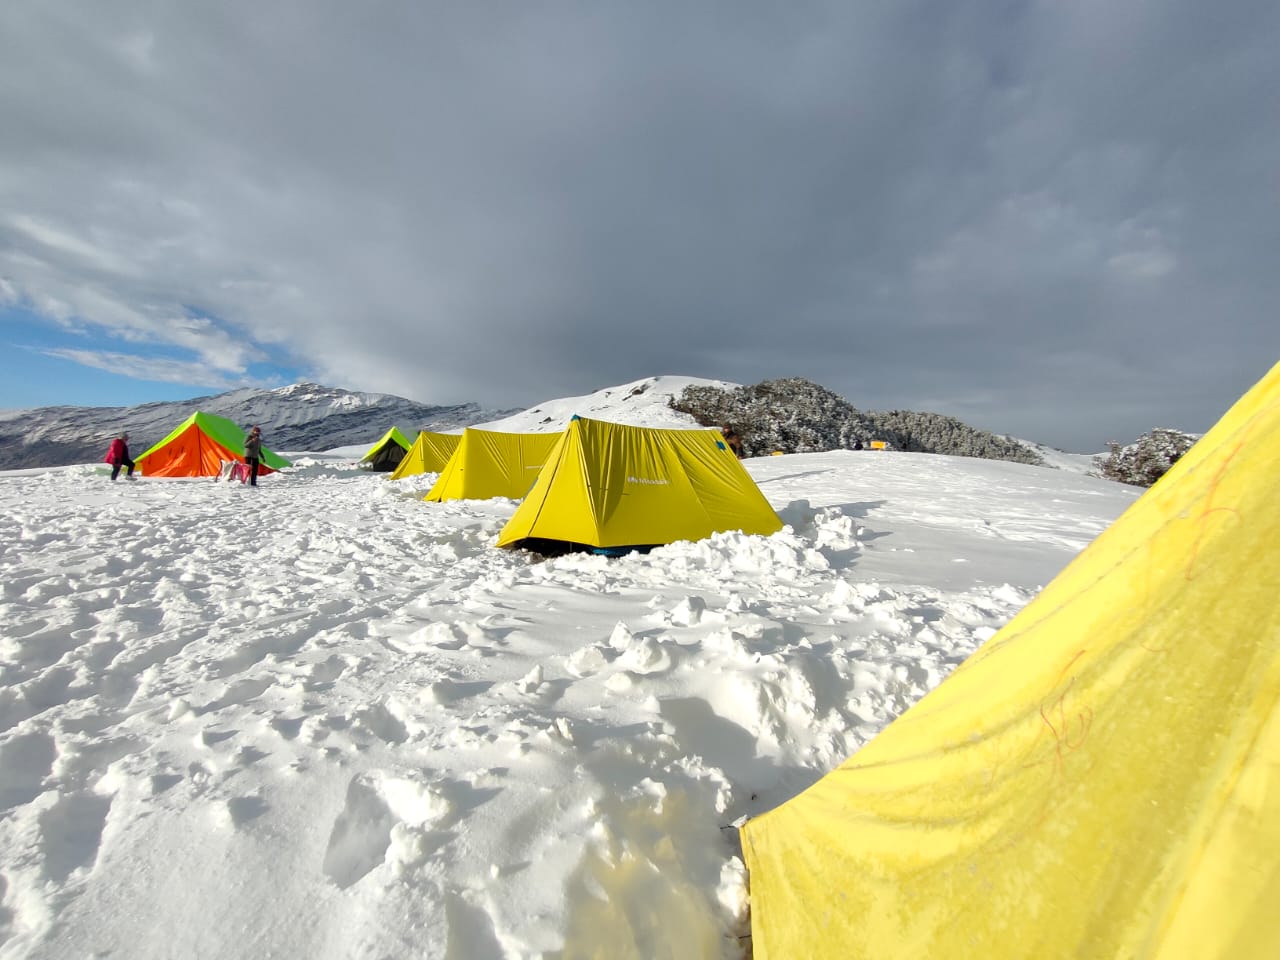 winter camping on snow brahmatal trek in winters